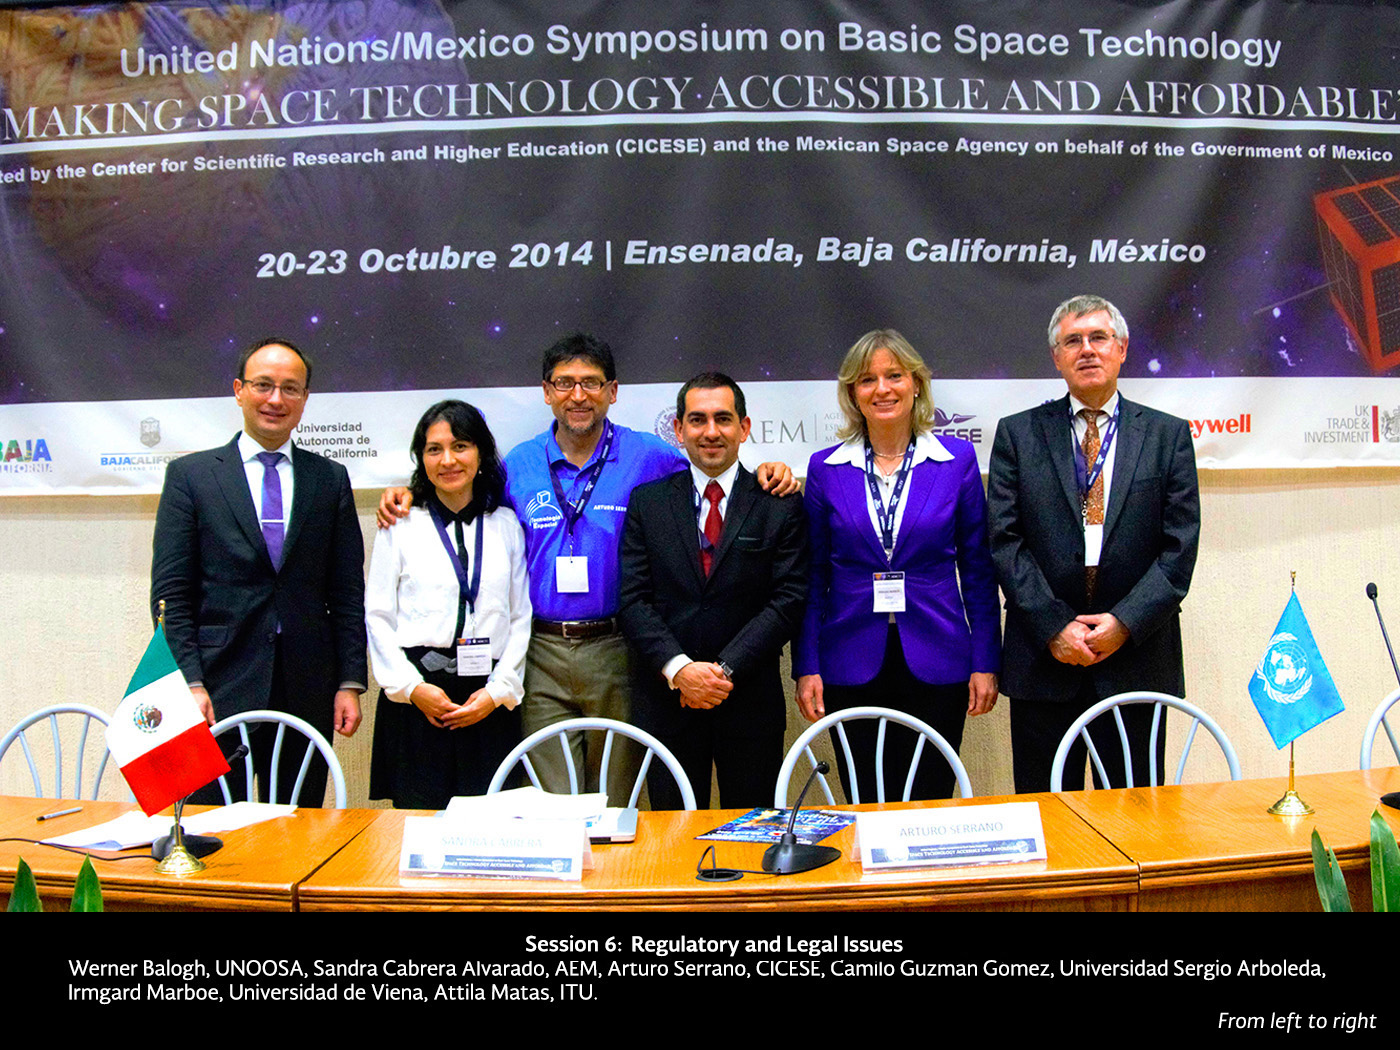 Presenta SCT avances de los satélites Centenario y Morelos 3 en Foro Internacional de la ONU